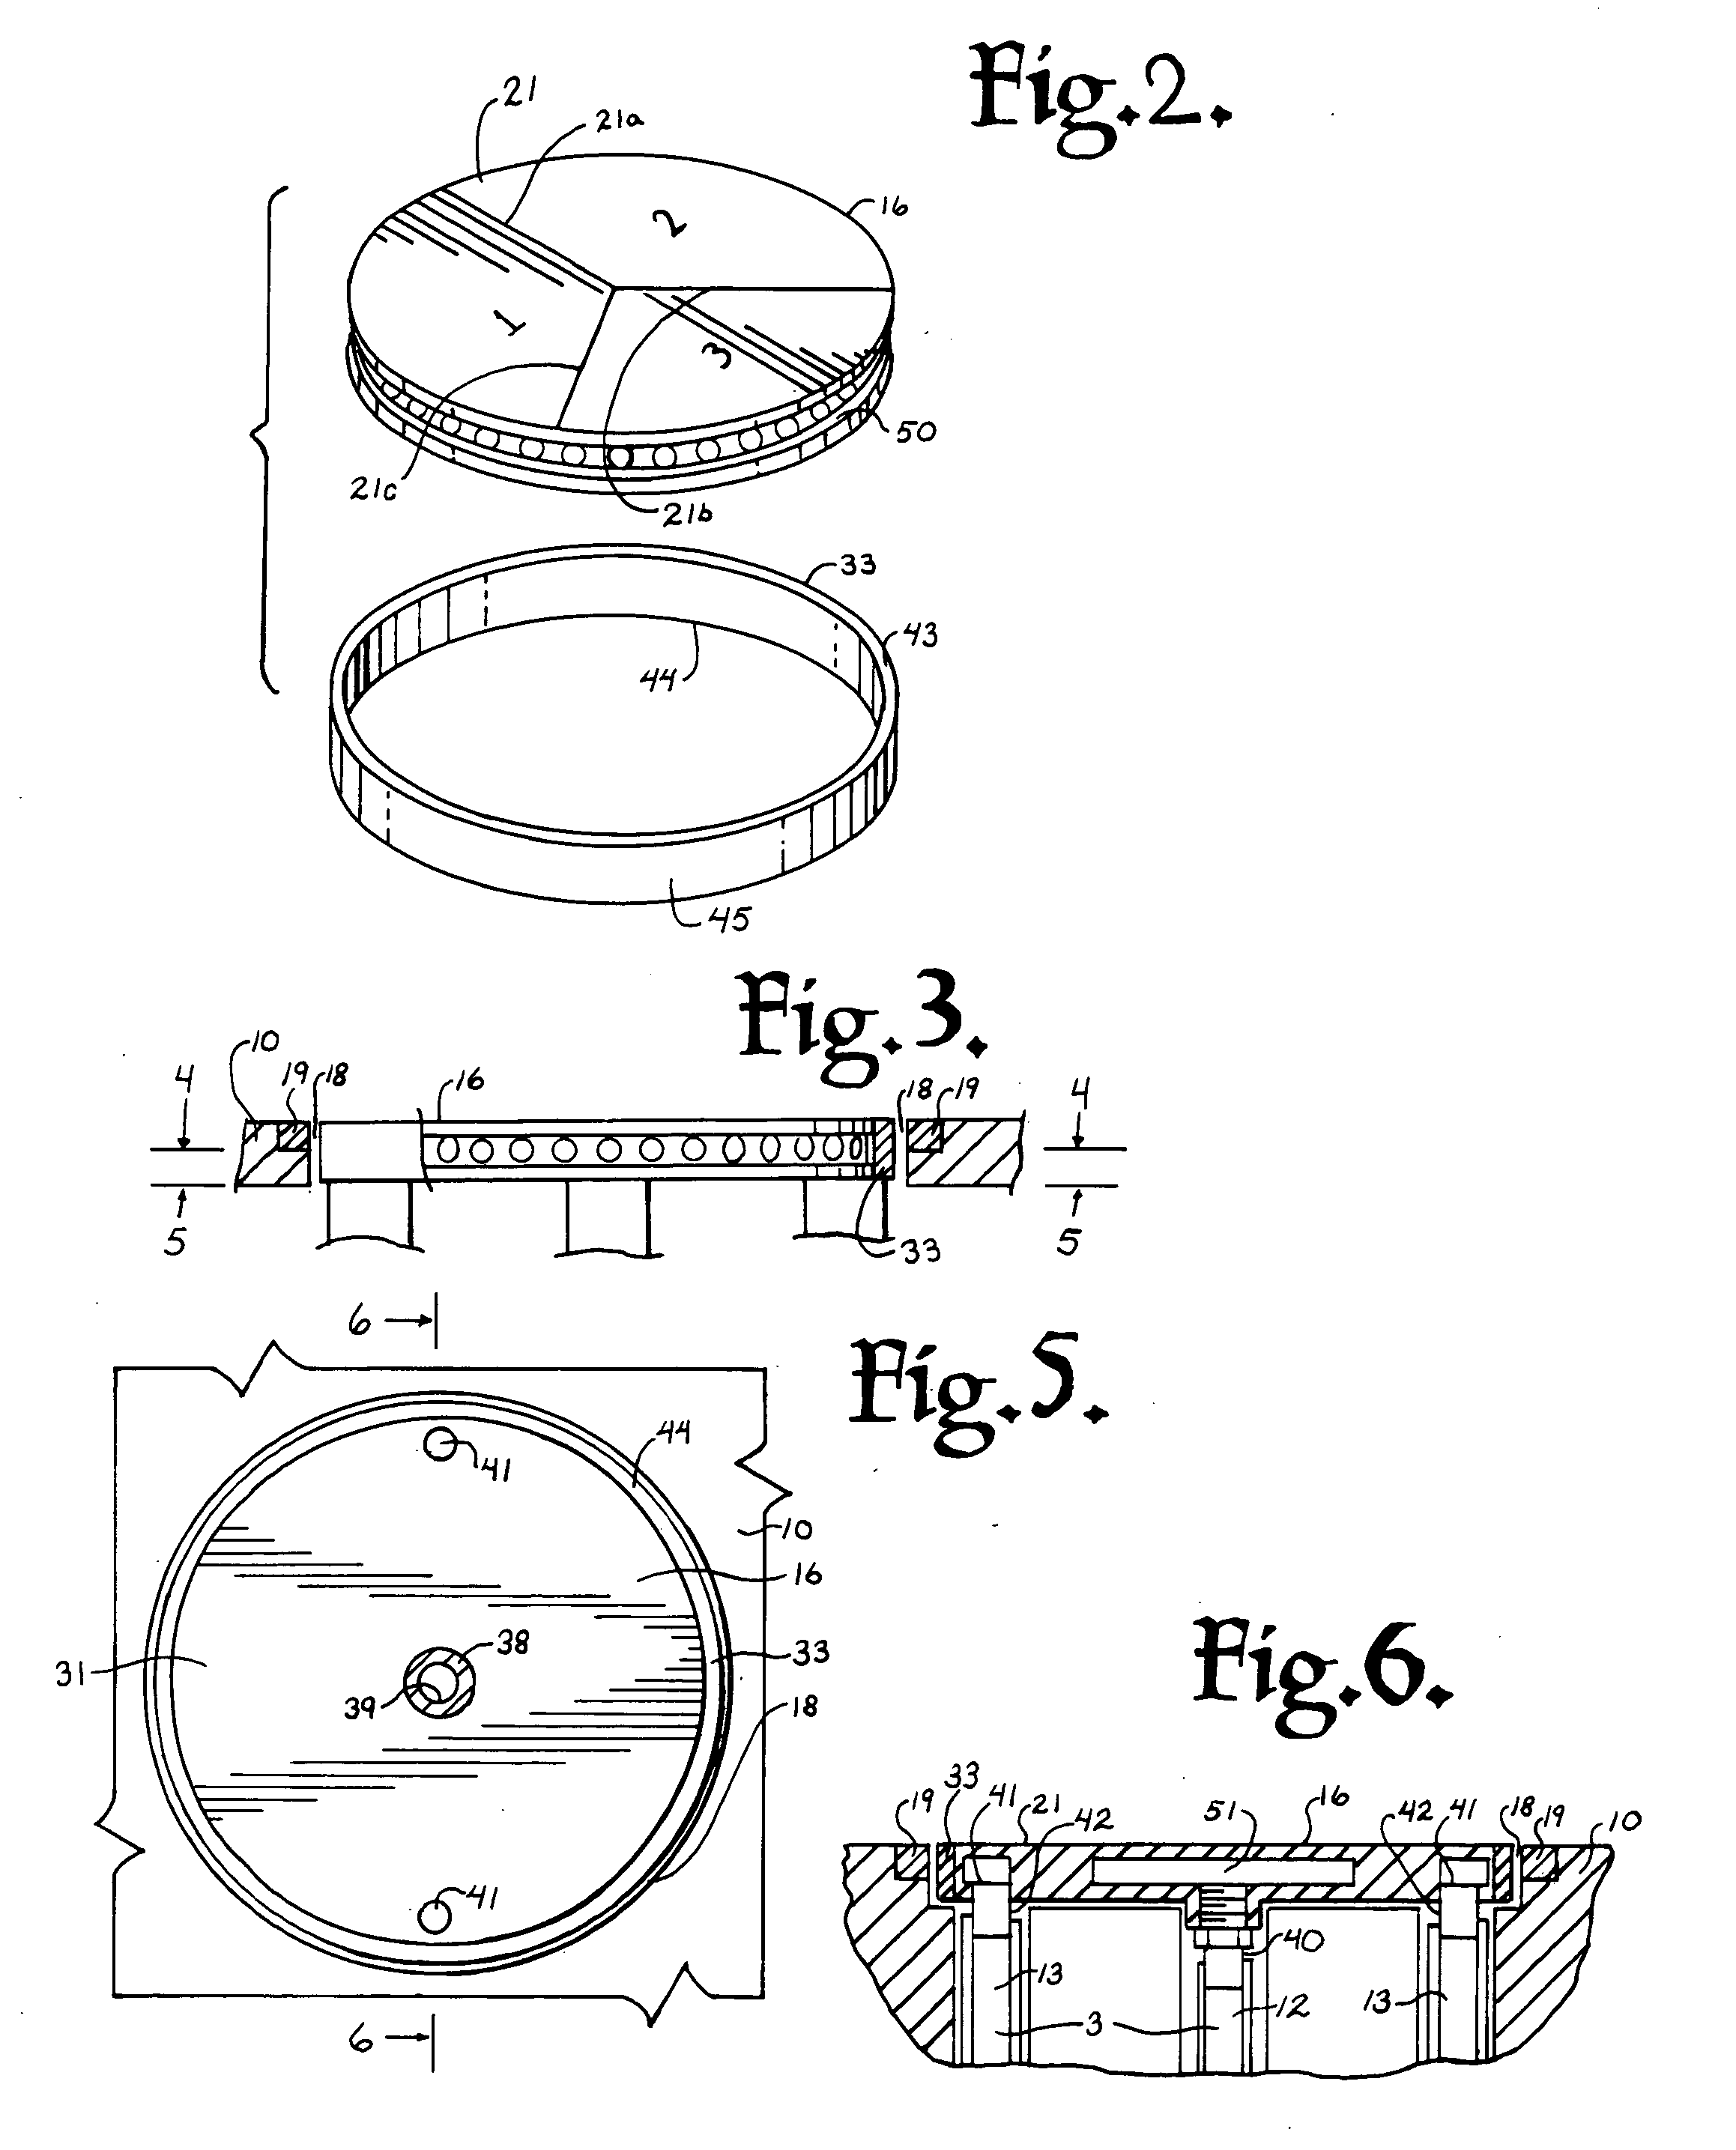 Apparatus and method for preparing frozen tissue specimens